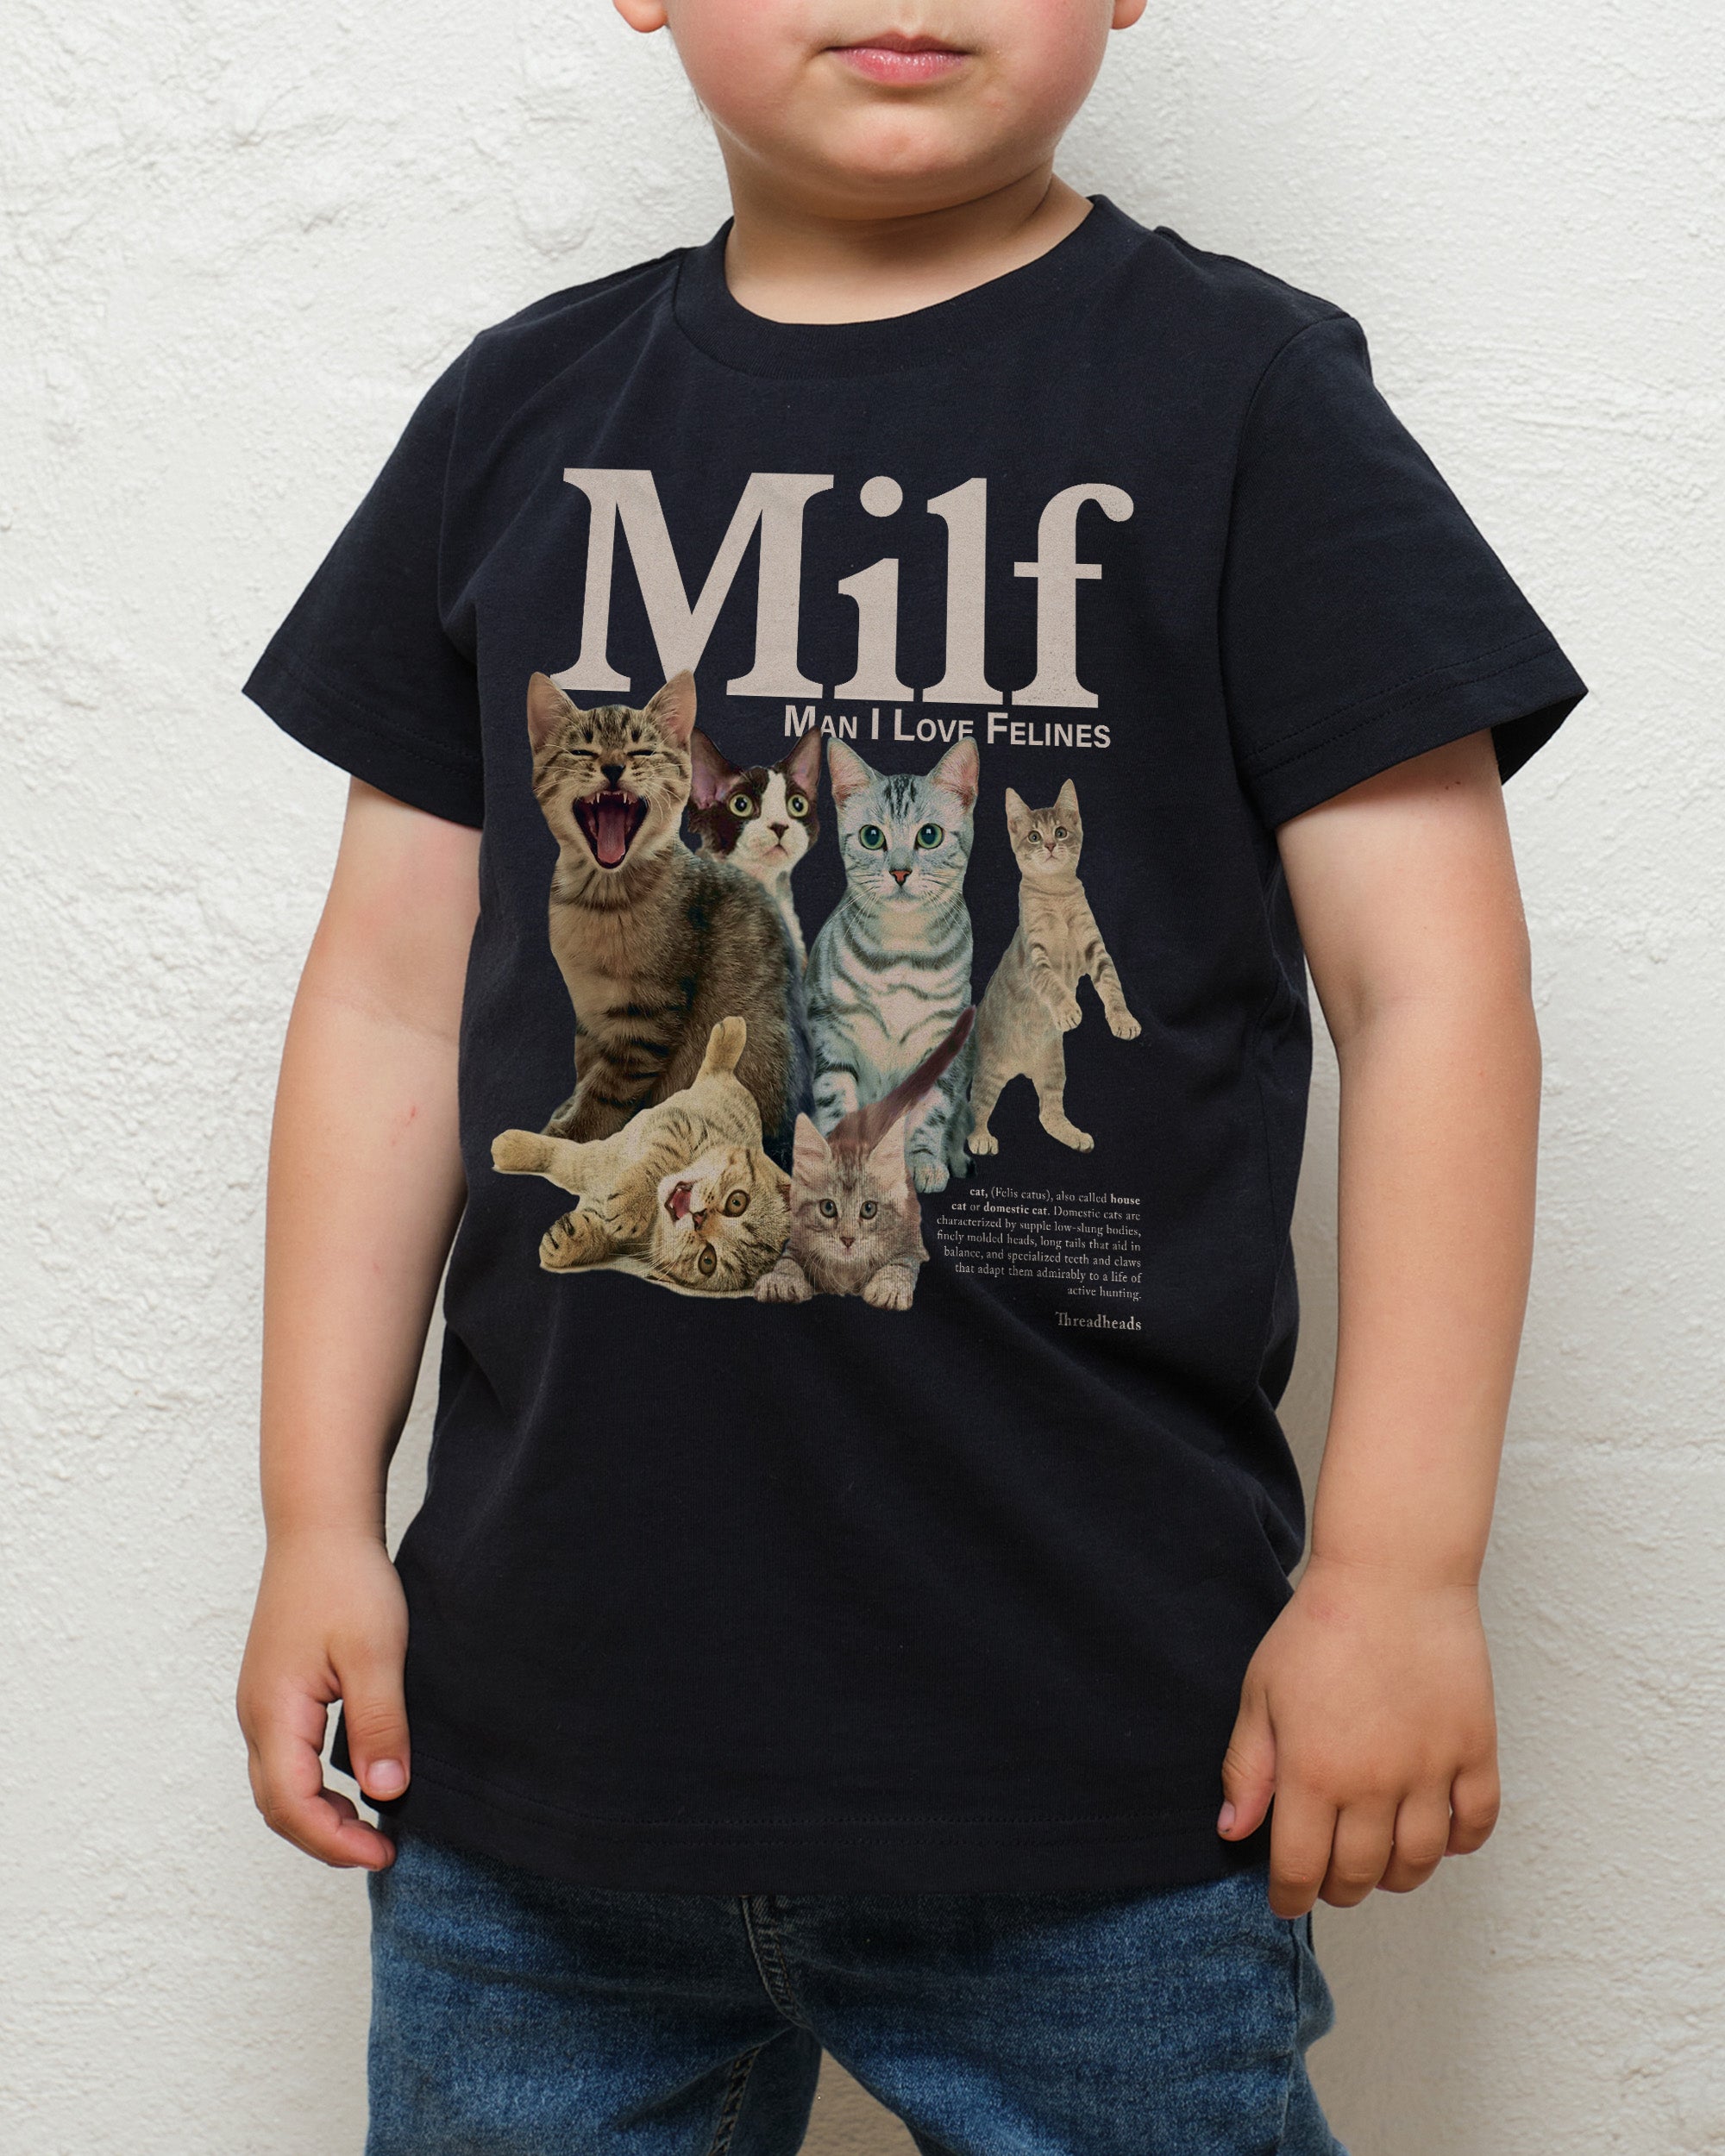 Man I Love Felines Kids T-Shirt Australia Online Navy